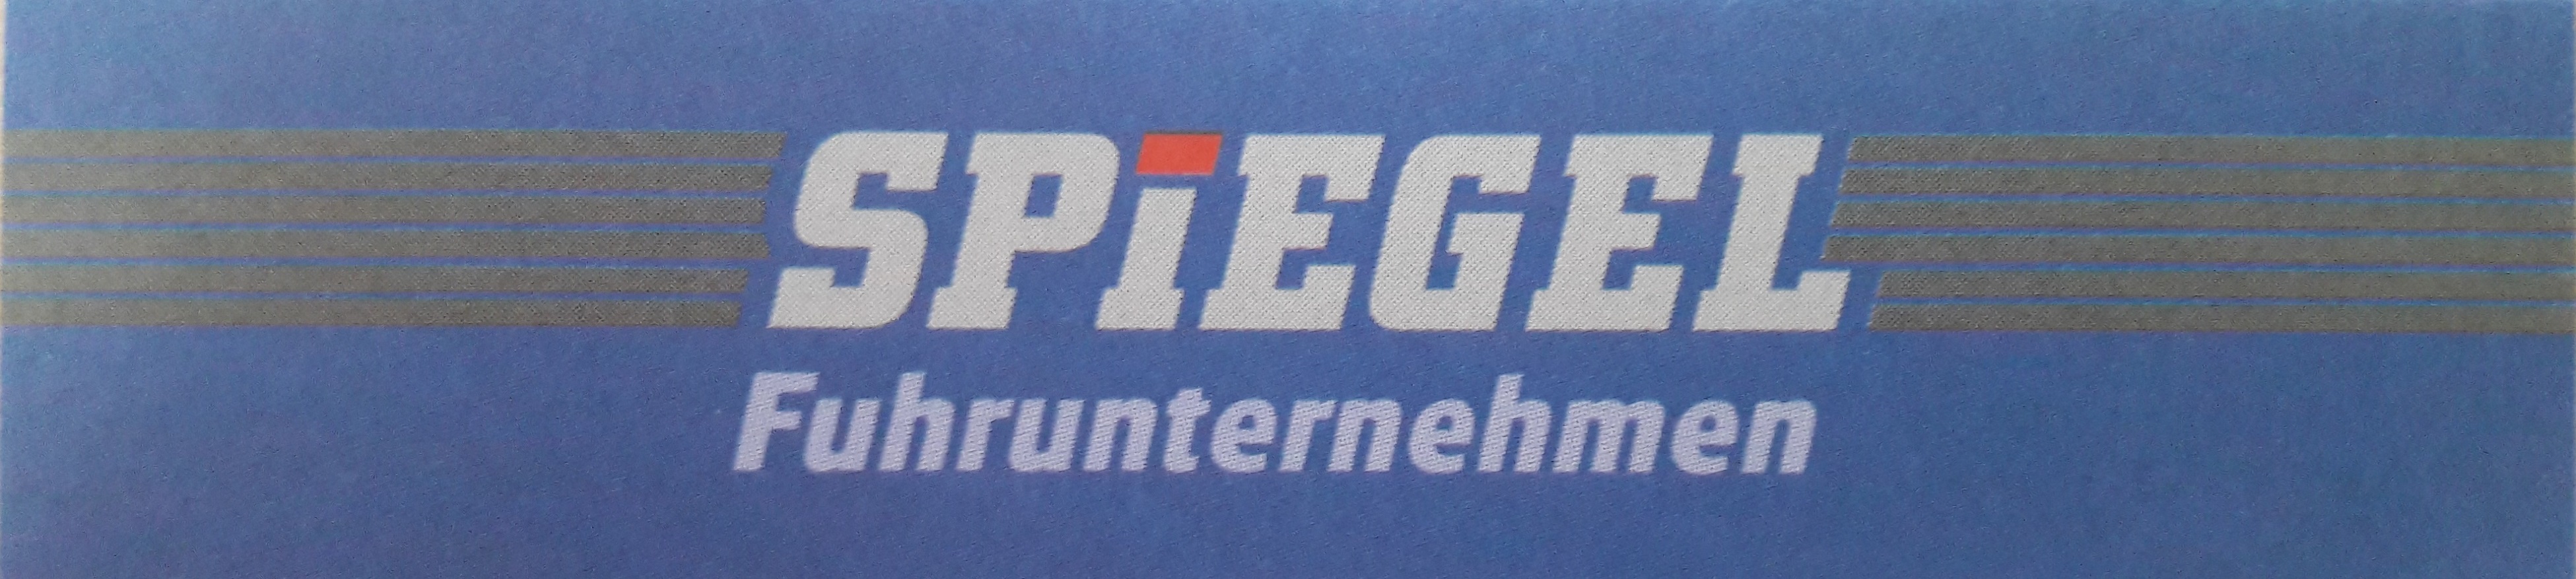 Spiegel Fuhrunternehmen GmbH